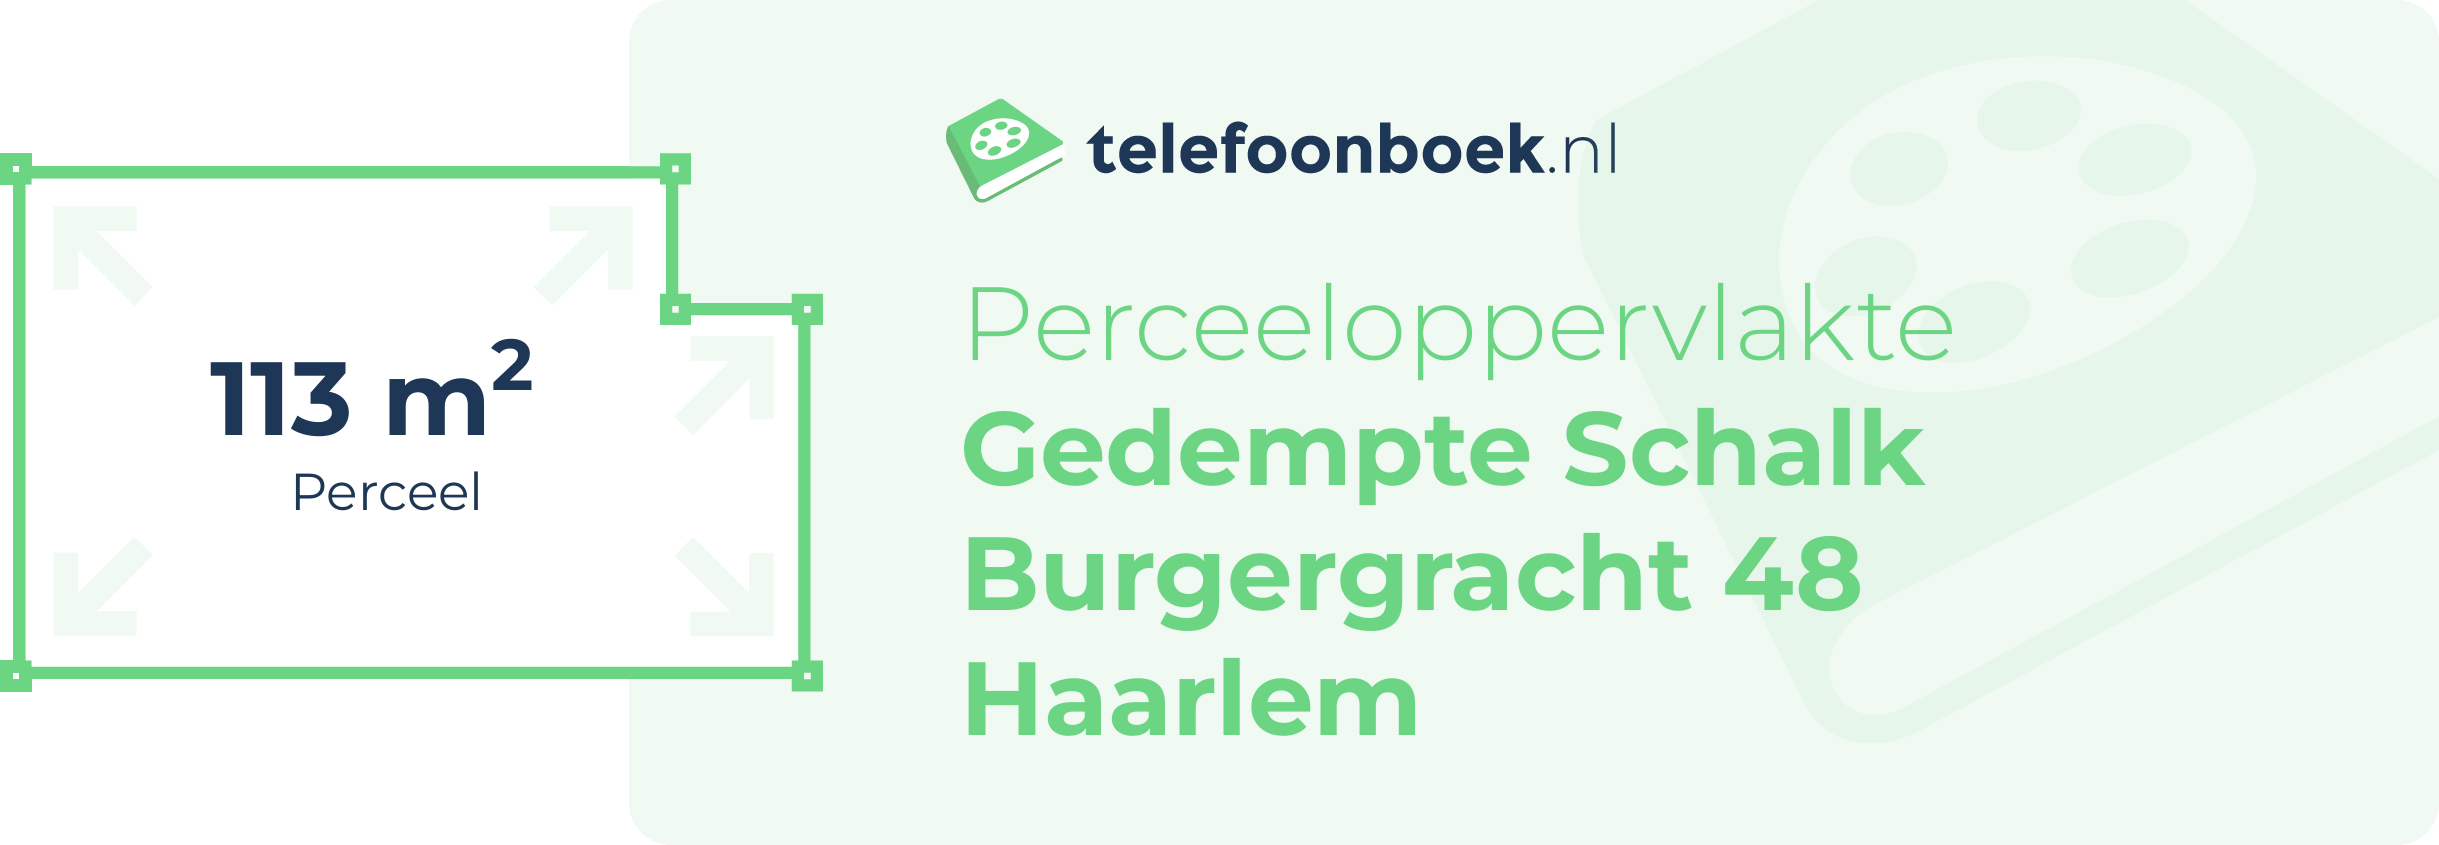 Perceeloppervlakte Gedempte Schalk Burgergracht 48 Haarlem